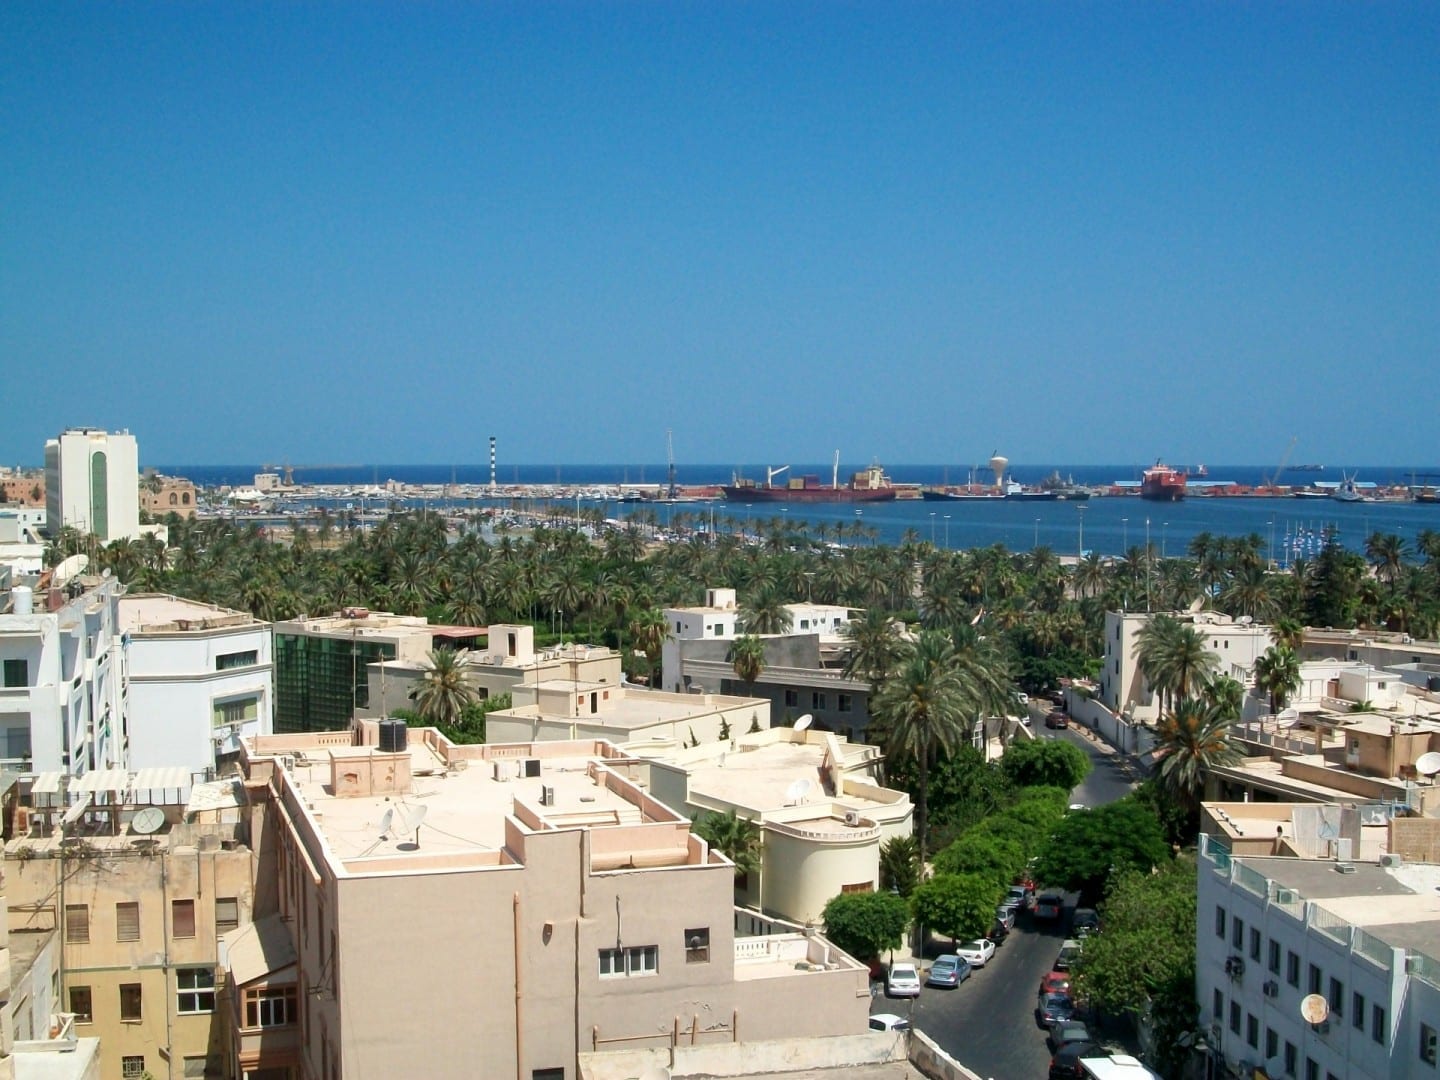 El parque Maydan Jazair y el puerto de Trípoli vistos desde el barrio italiano. Trípoli Libia